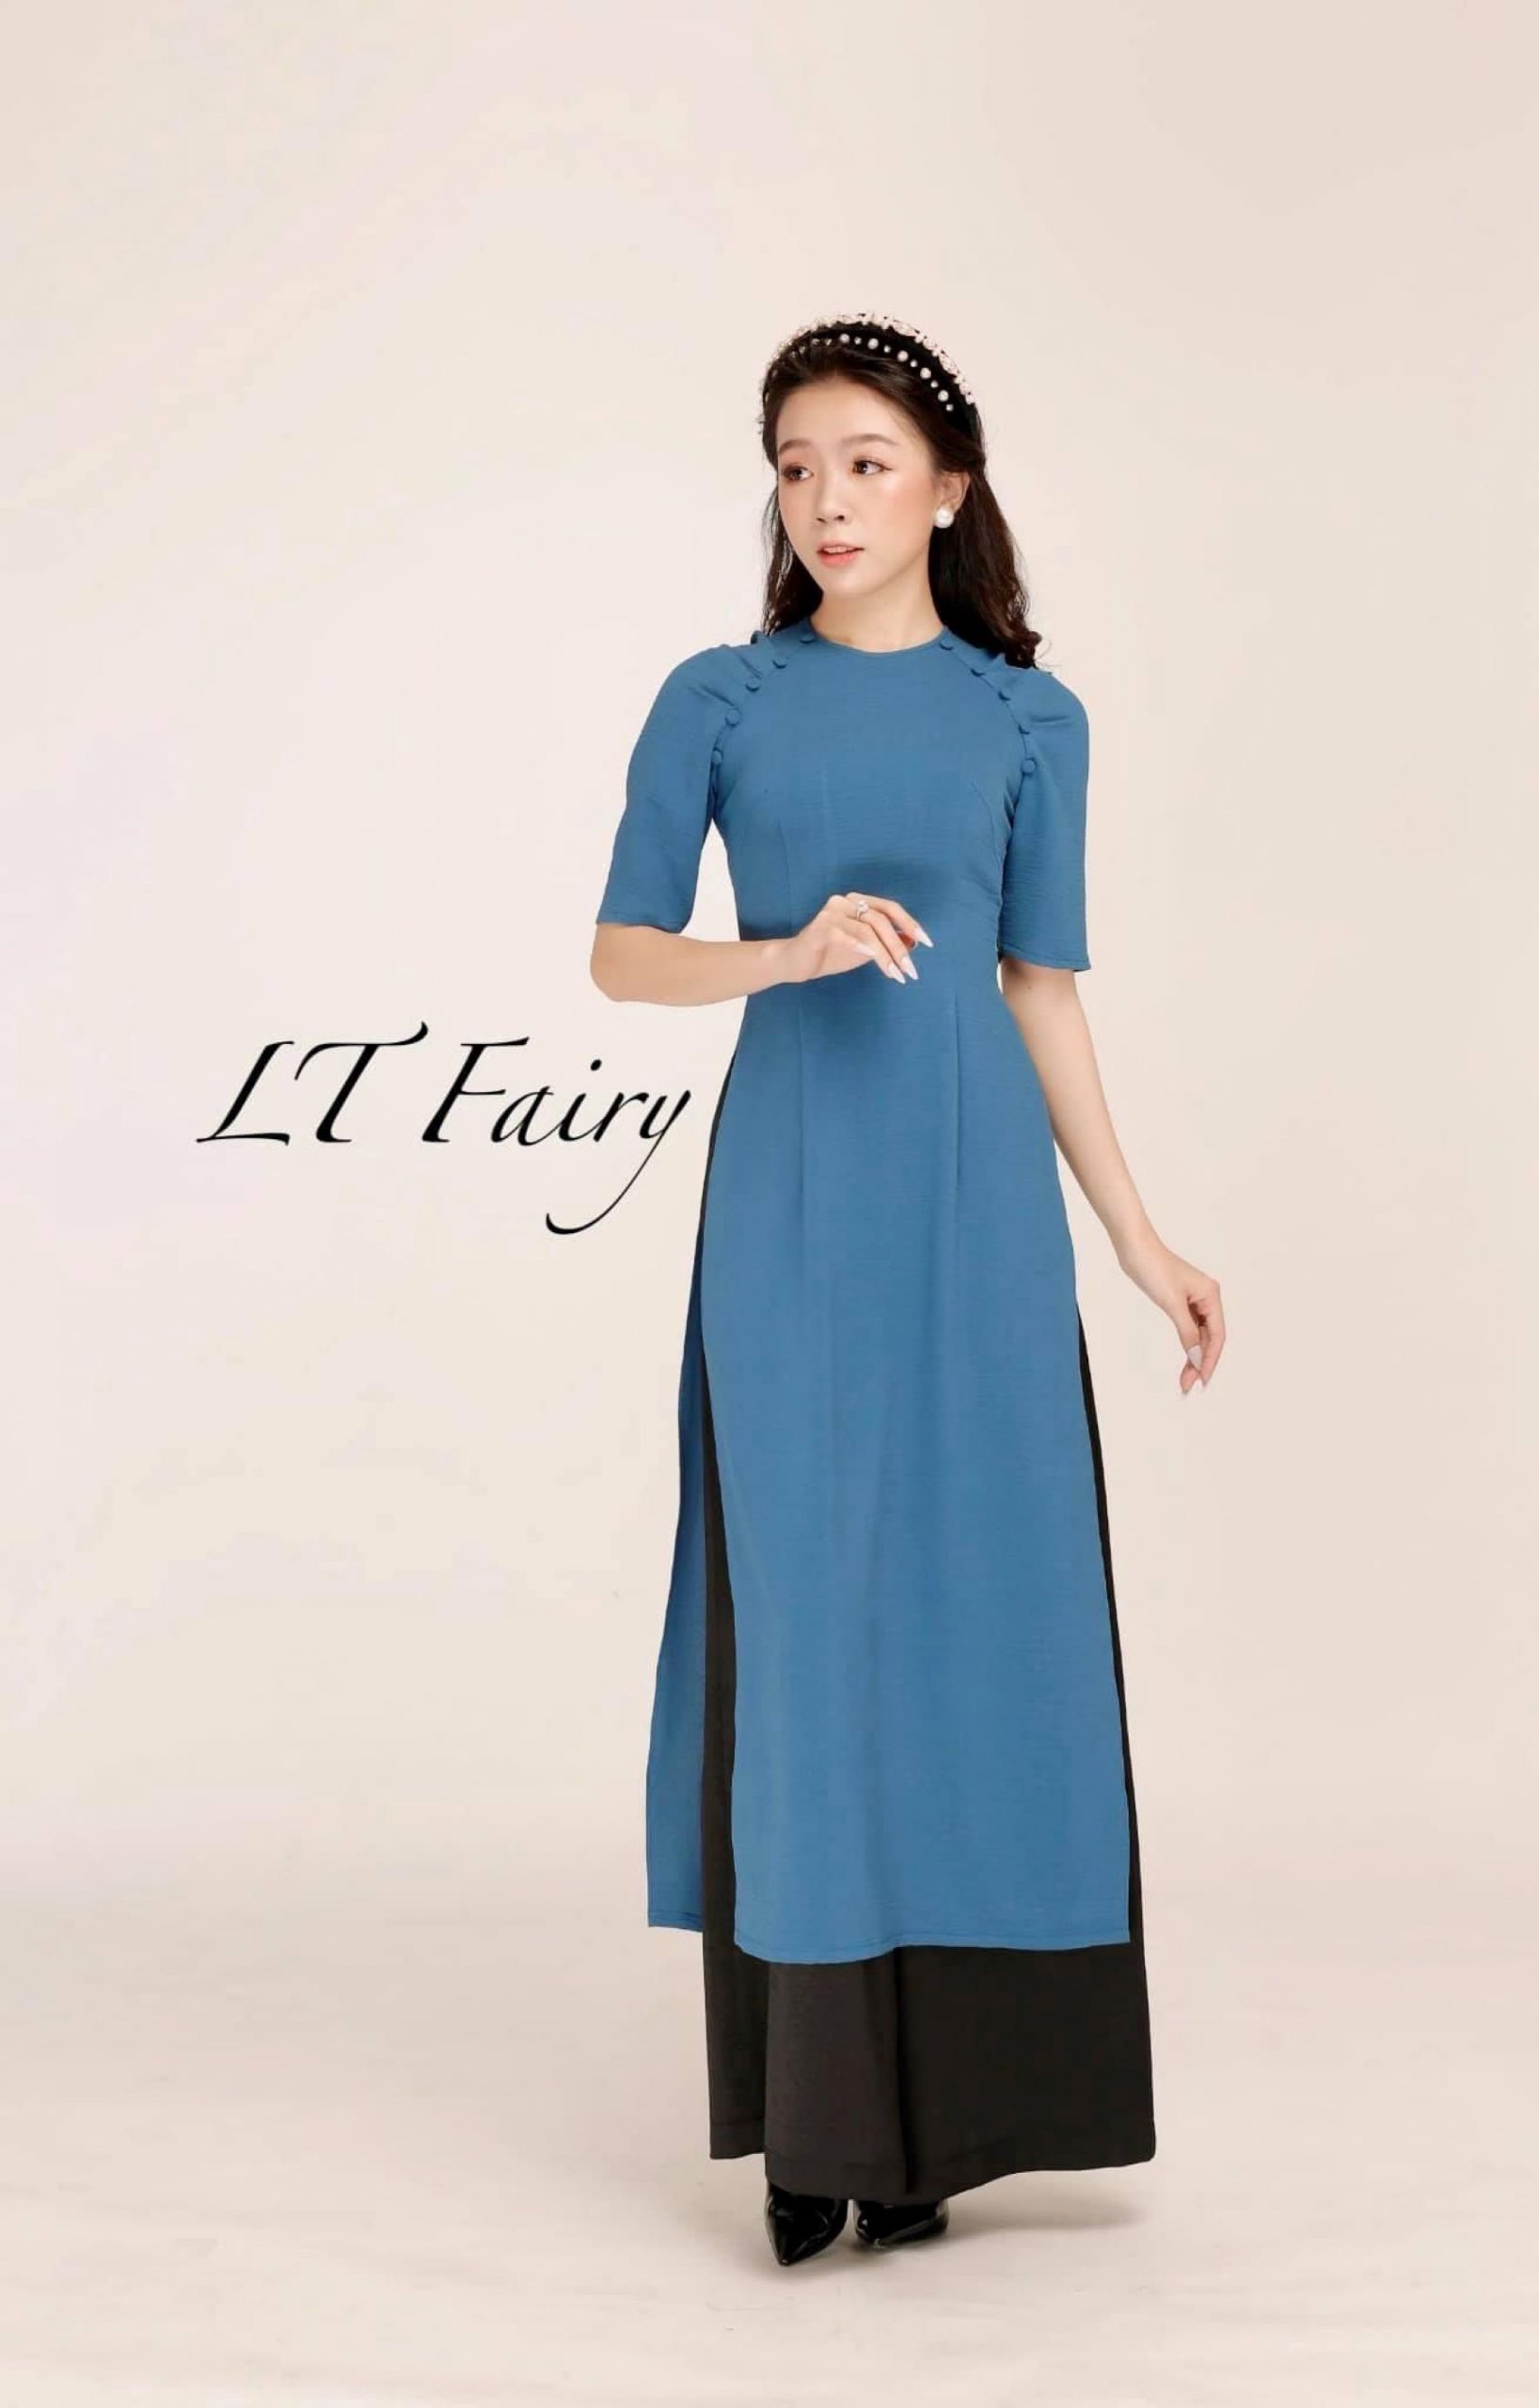 Trần Thanh Lan trong tà áo dài cách tân của thương hiệu LT Fairy